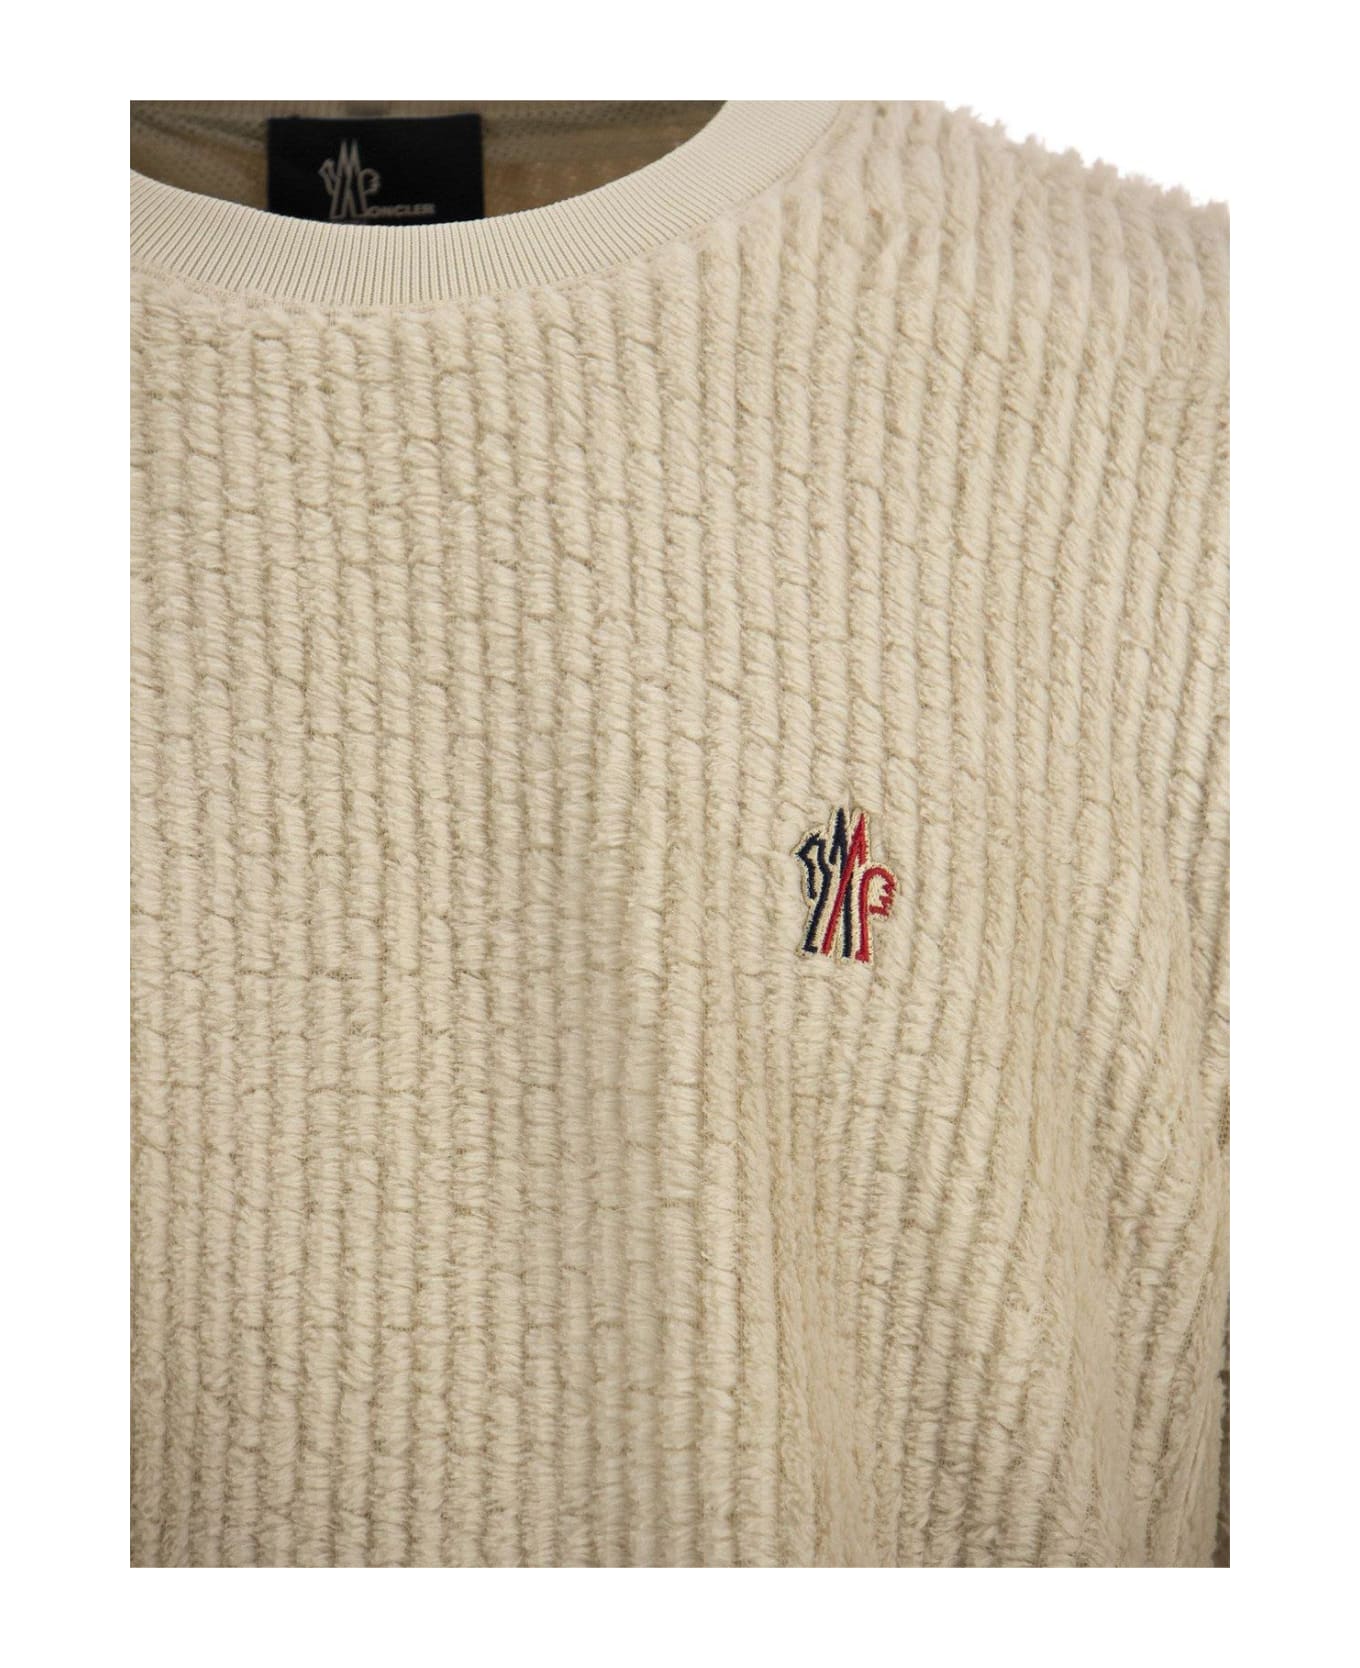 Moncler Grenoble Fleece Sweatshirt - White